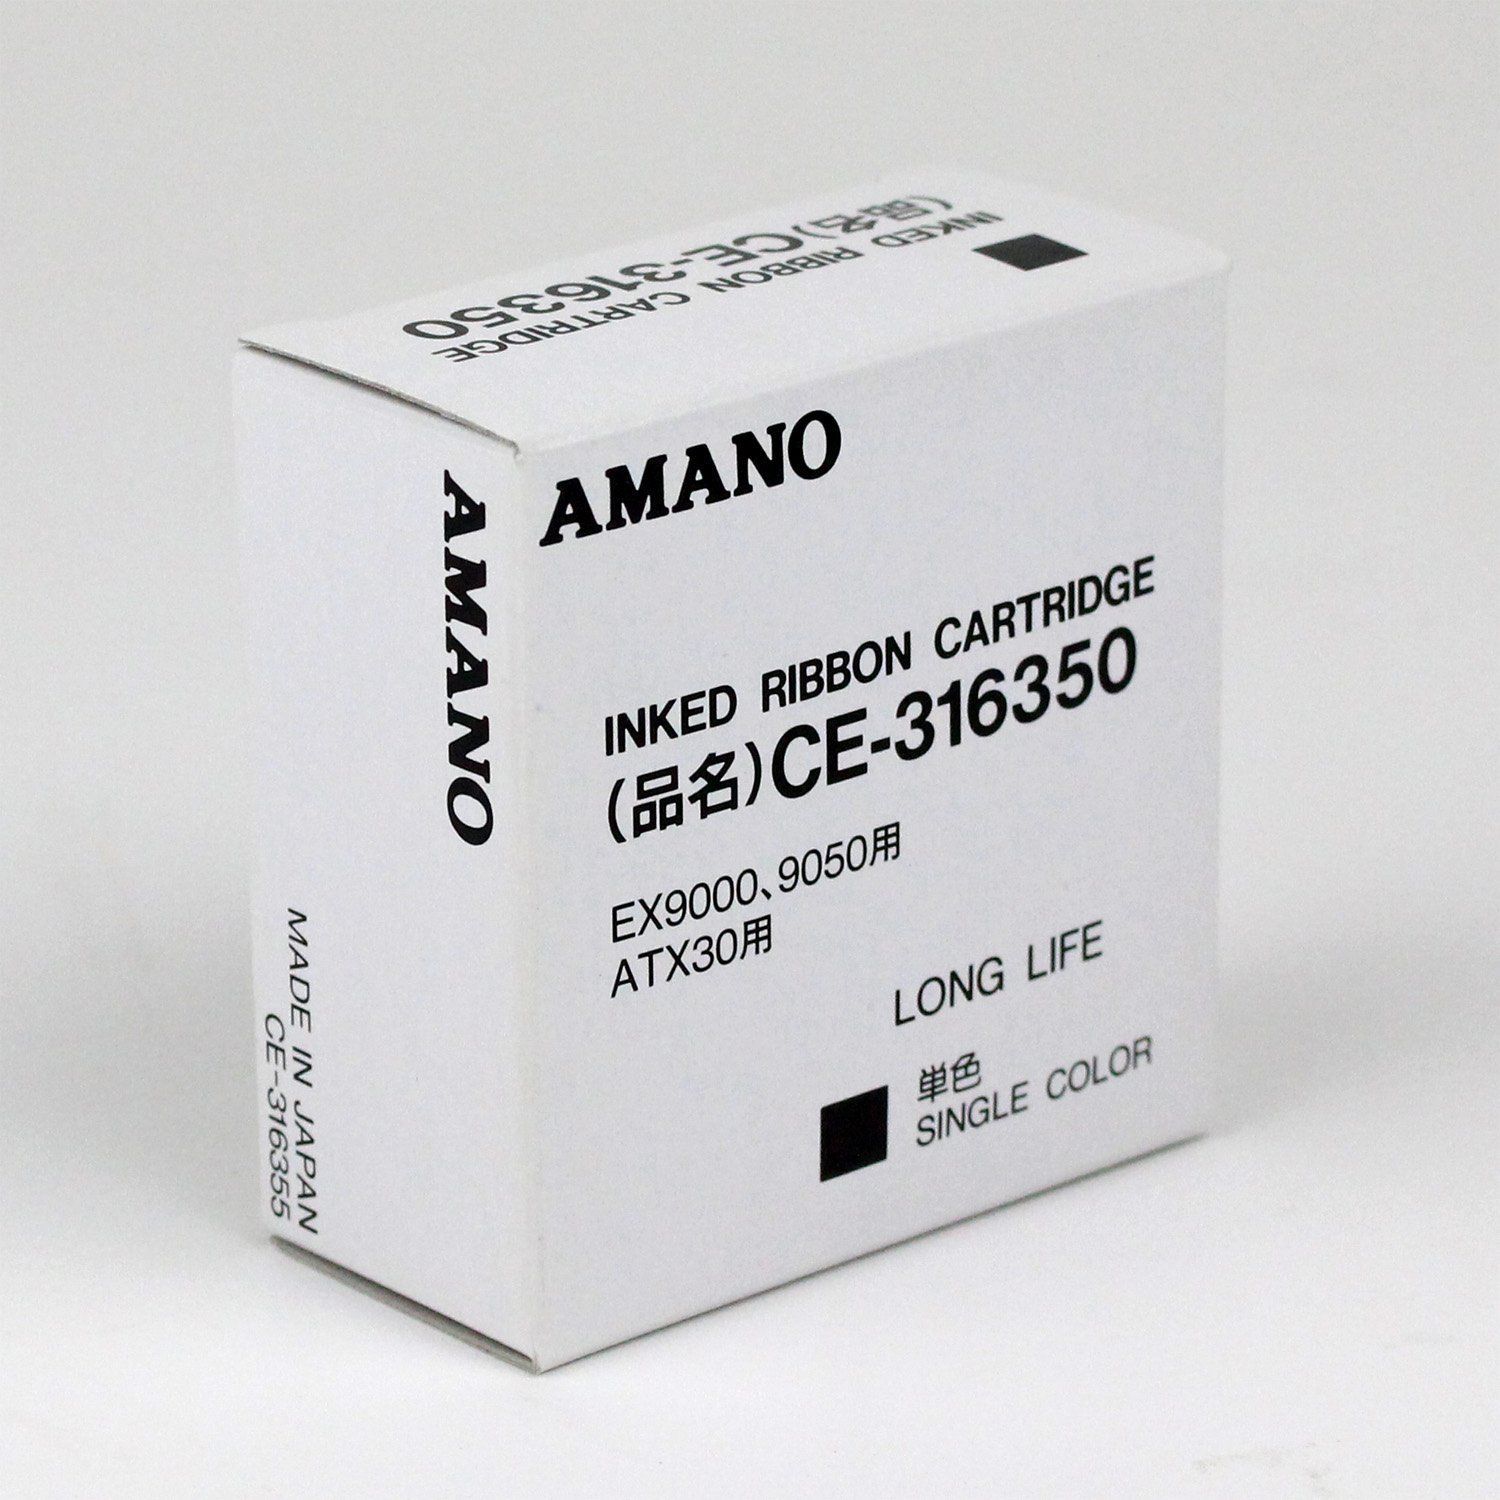 アマノ タイムカード用 インクリボンカートリッジ  CE-319250 5個